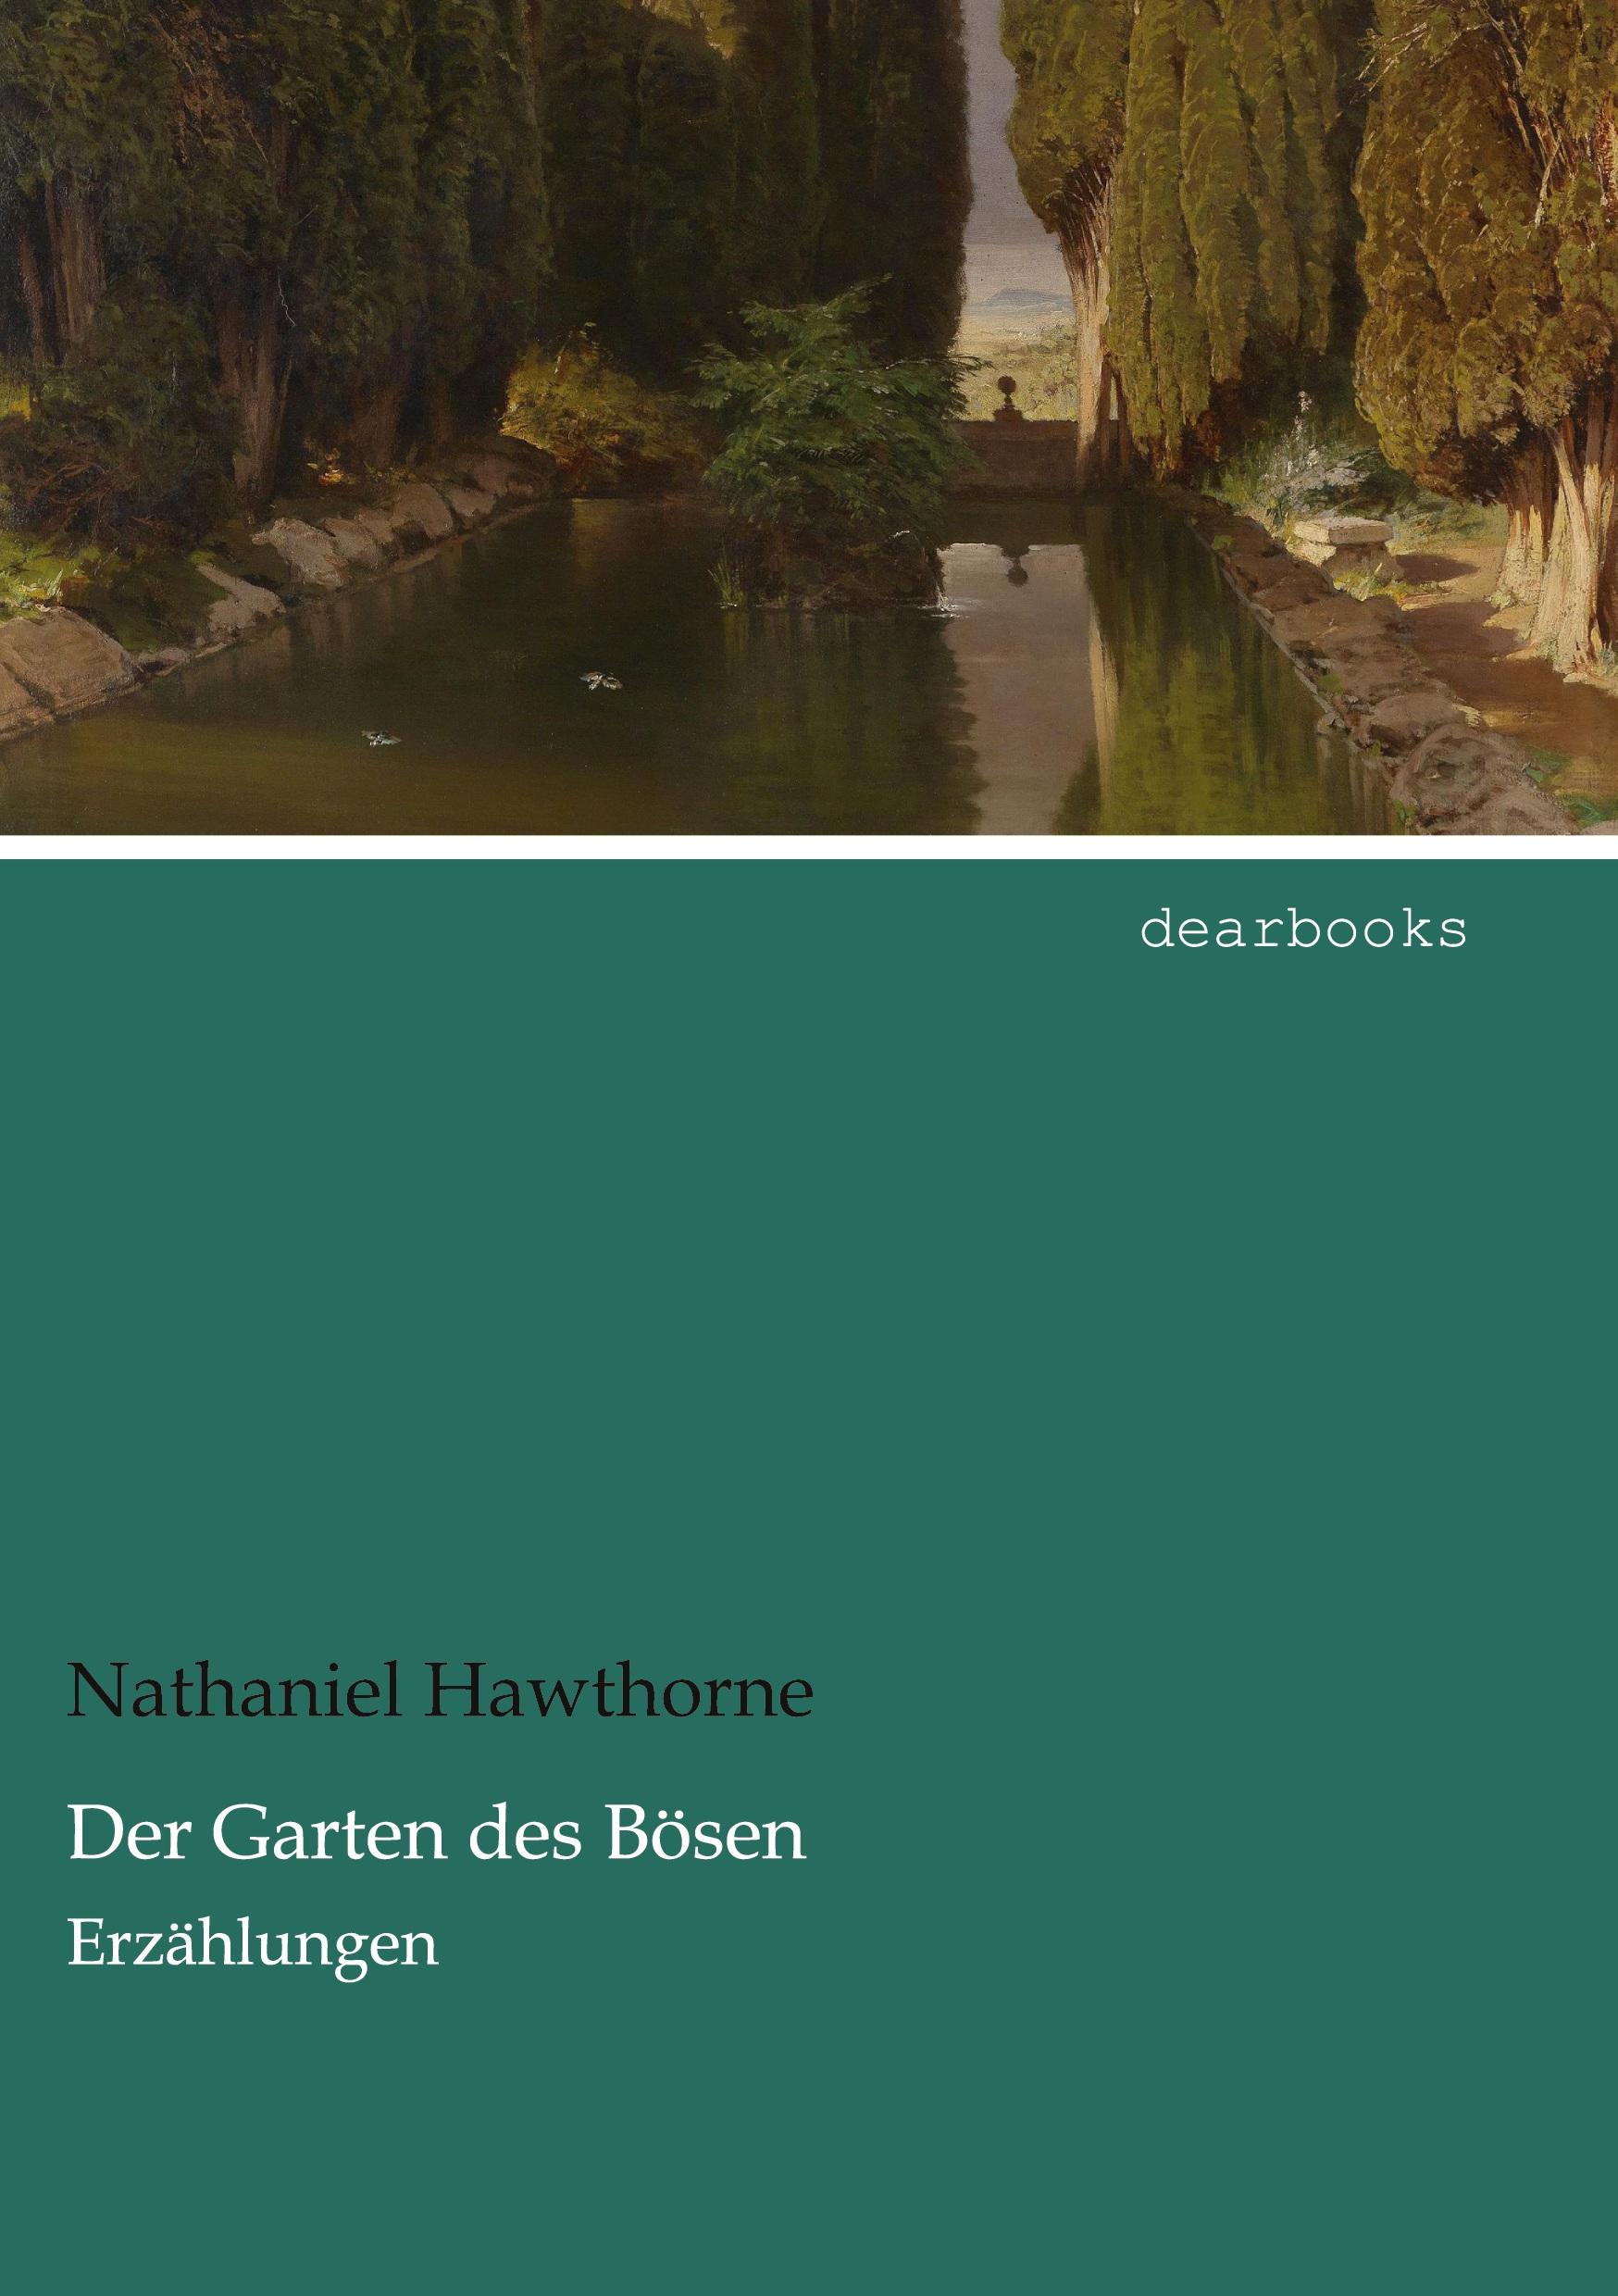 Der Garten des Bösen | Erzählungen | Nathaniel Hawthorne | Taschenbuch | Paperback | 252 S. | Deutsch | 2021 | dearbooks | EAN 9783954558346 - Hawthorne, Nathaniel